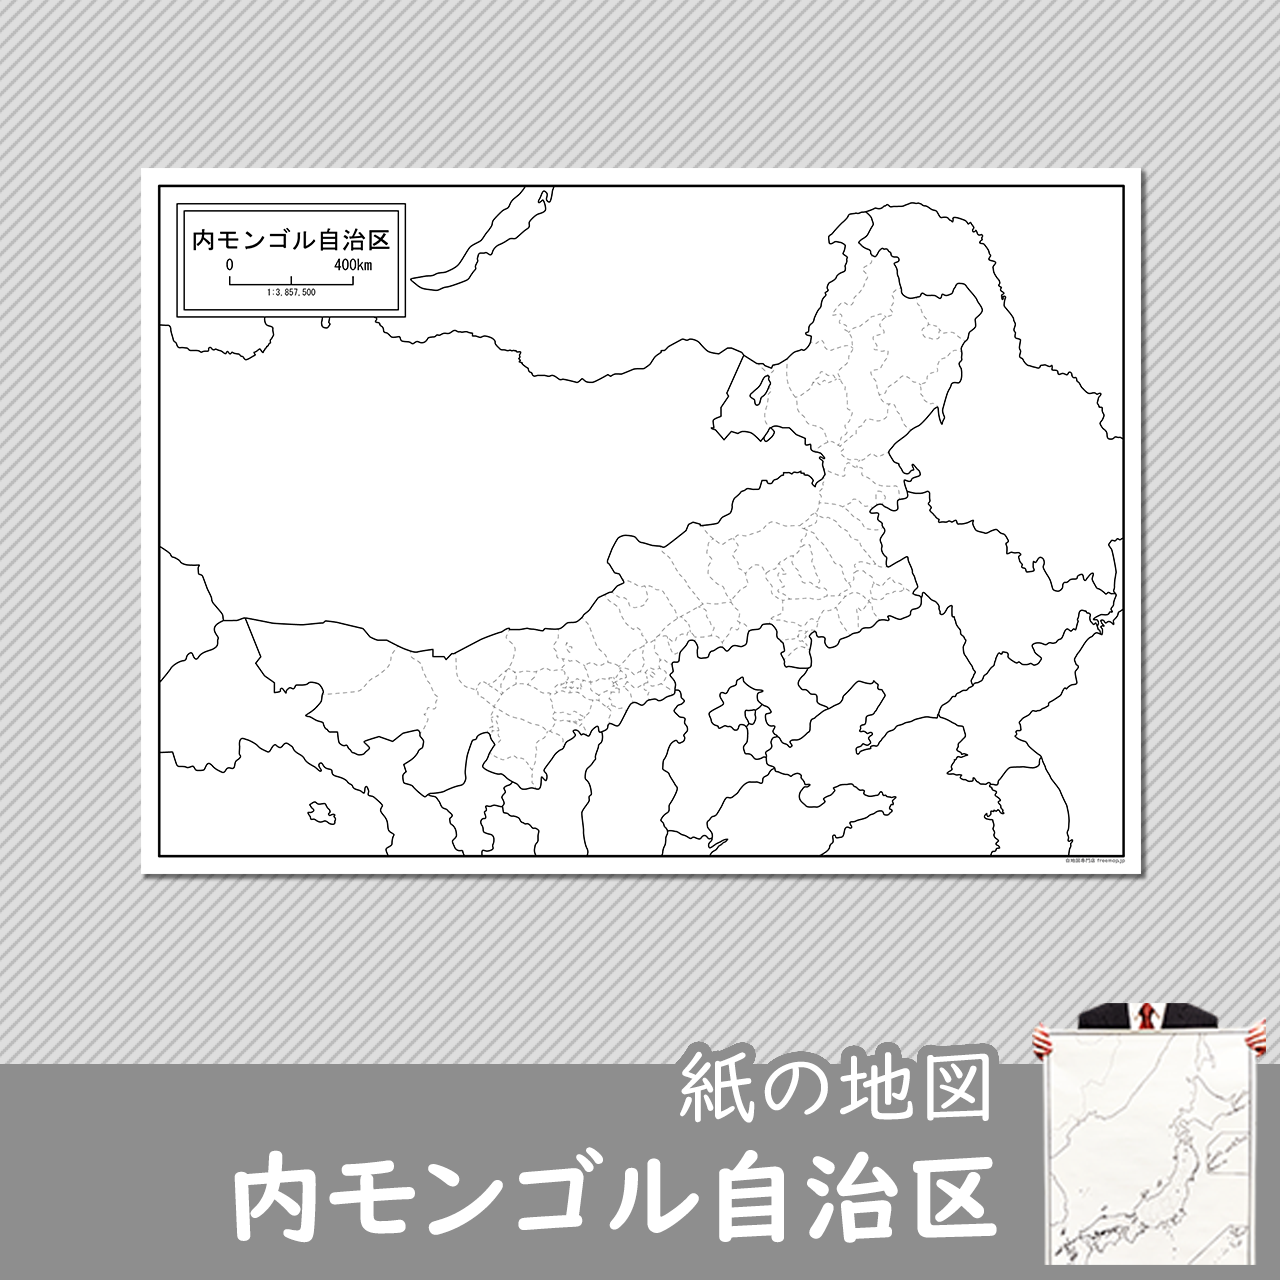 内モンゴル自治区の紙の白地図のサムネイル